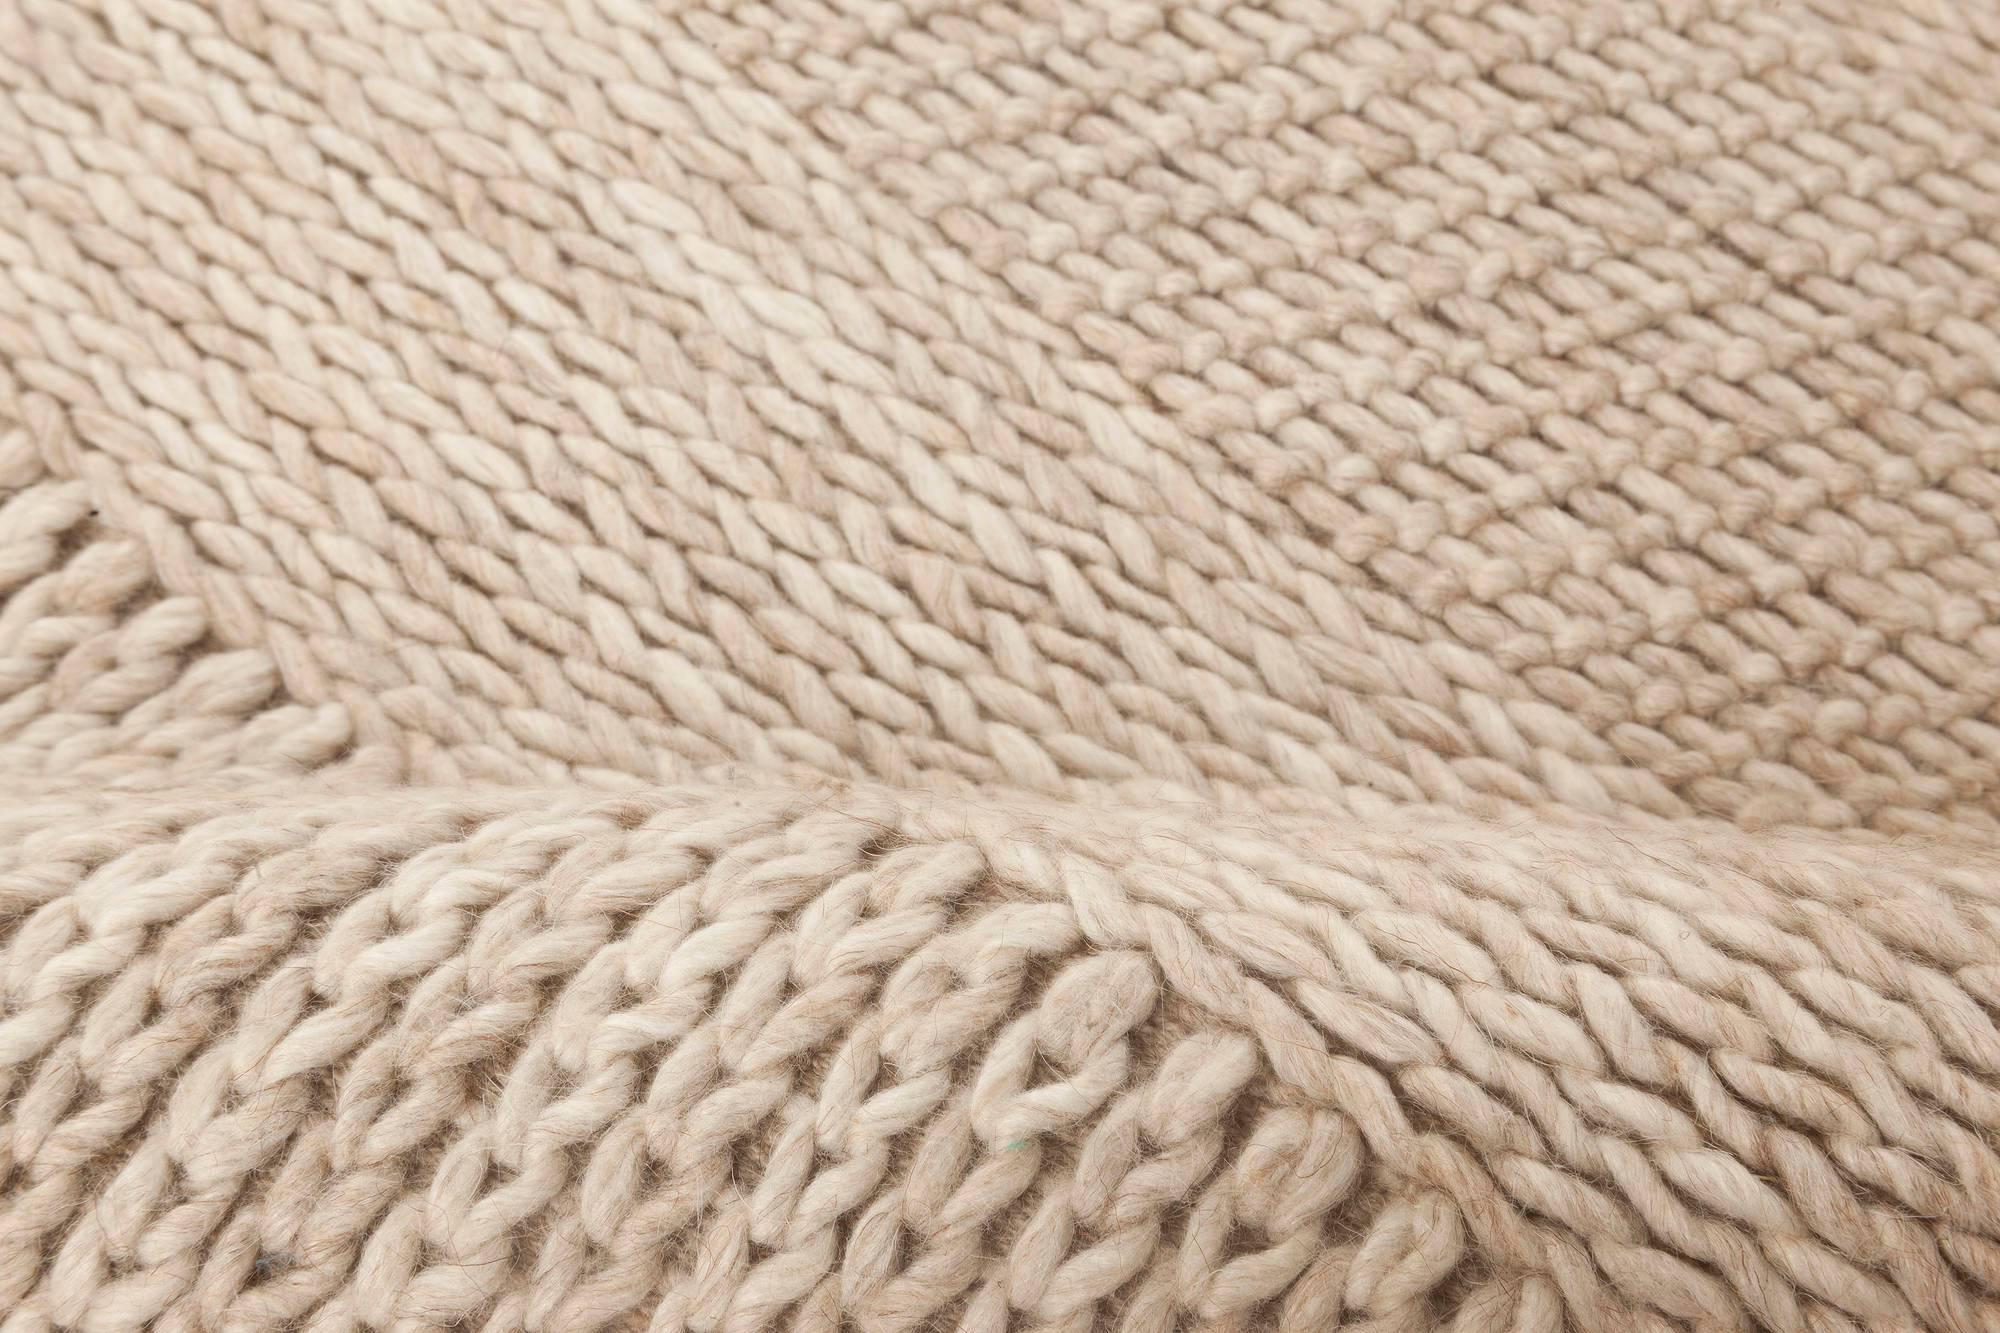 Modern Beige and gray flat-weave wool rug by Doris Leslie Blau
Size: 5'0